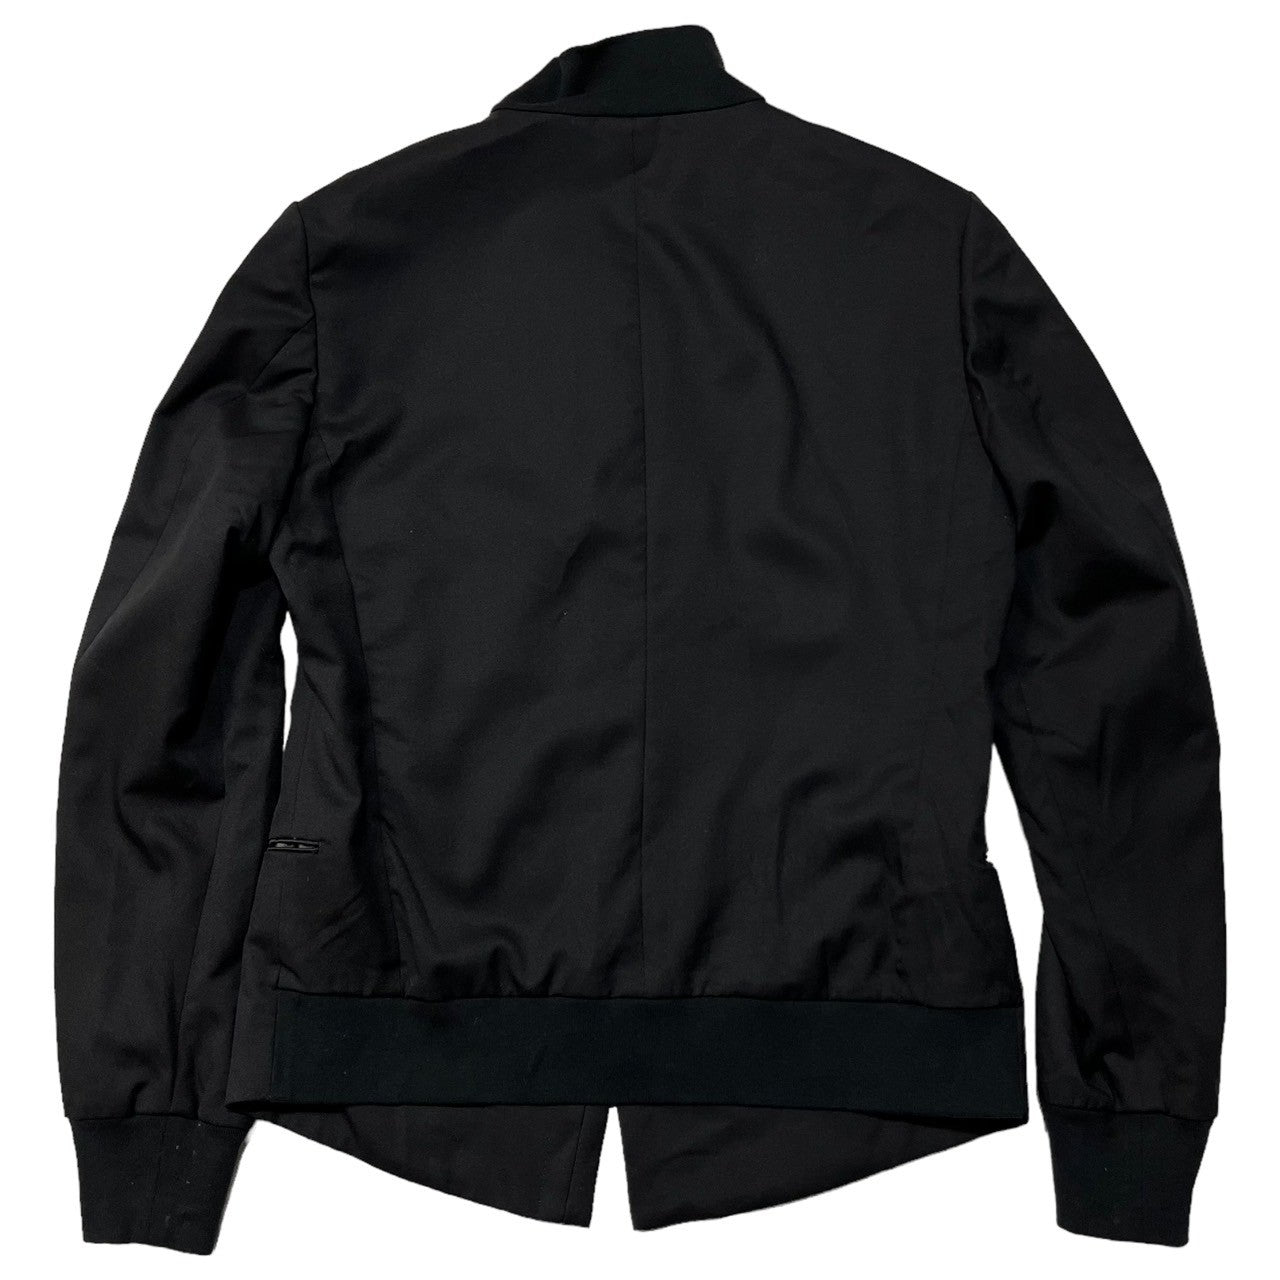 PAUL SMITH(ポールスミス) zip up jacket ジップアップ ジャケット ブルゾン PM-KS-40361 SIZE M ブラック